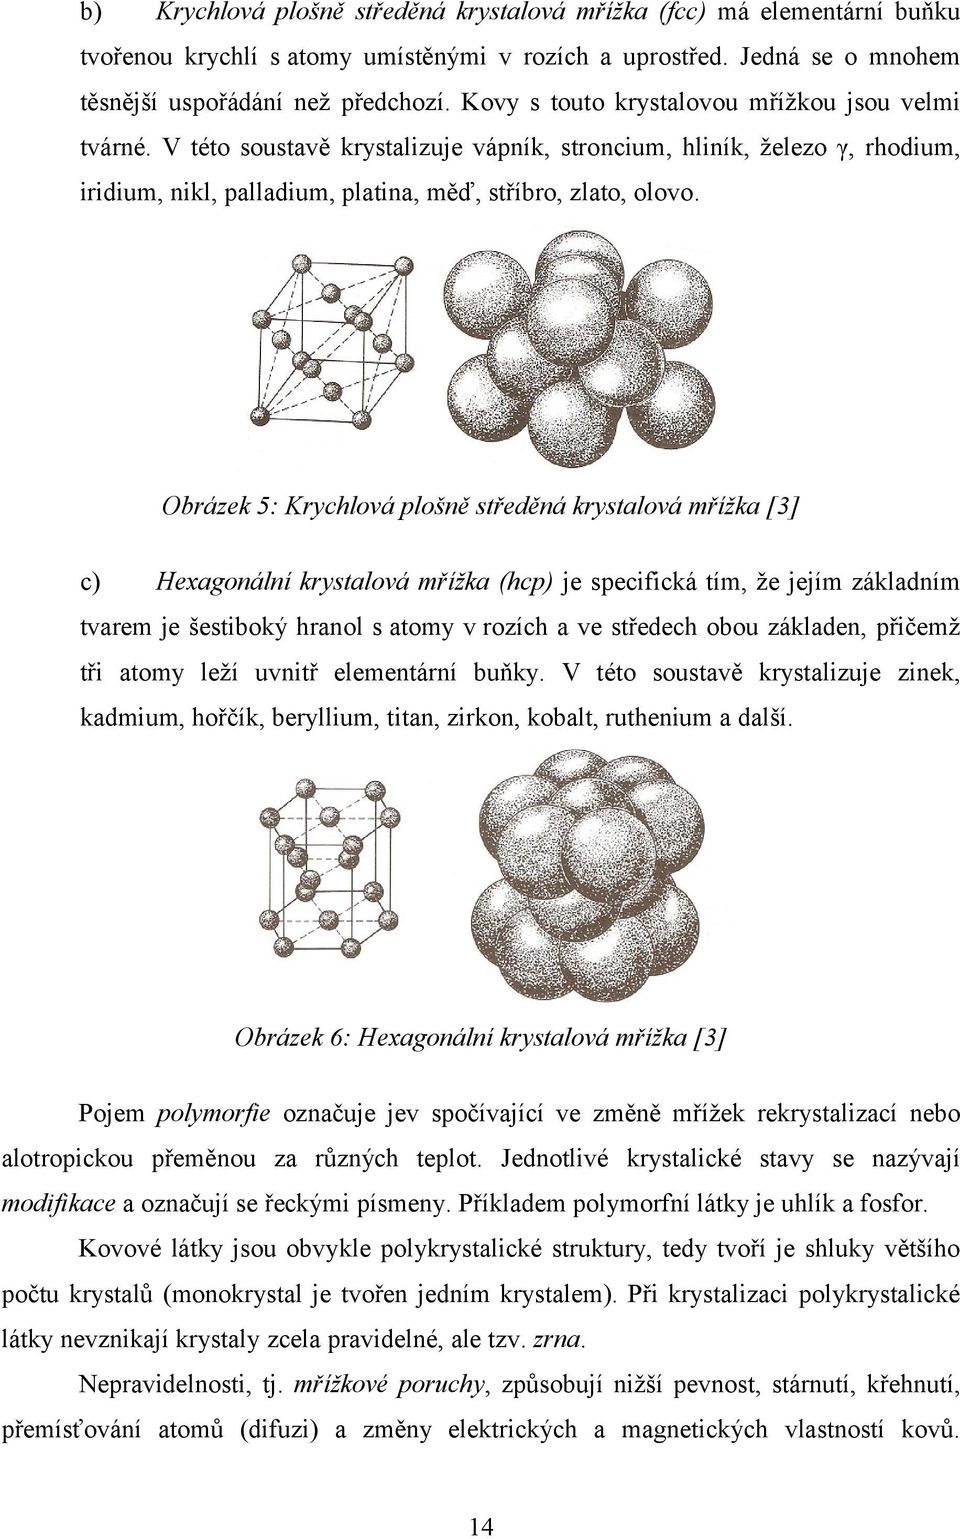 Obrázek 5: Krychlová plošně středěná krystalová mřížka [3] c) Hexagonální krystalová mřížka (hcp) je specifická tím, ţe jejím základním tvarem je šestiboký hranol s atomy v rozích a ve středech obou